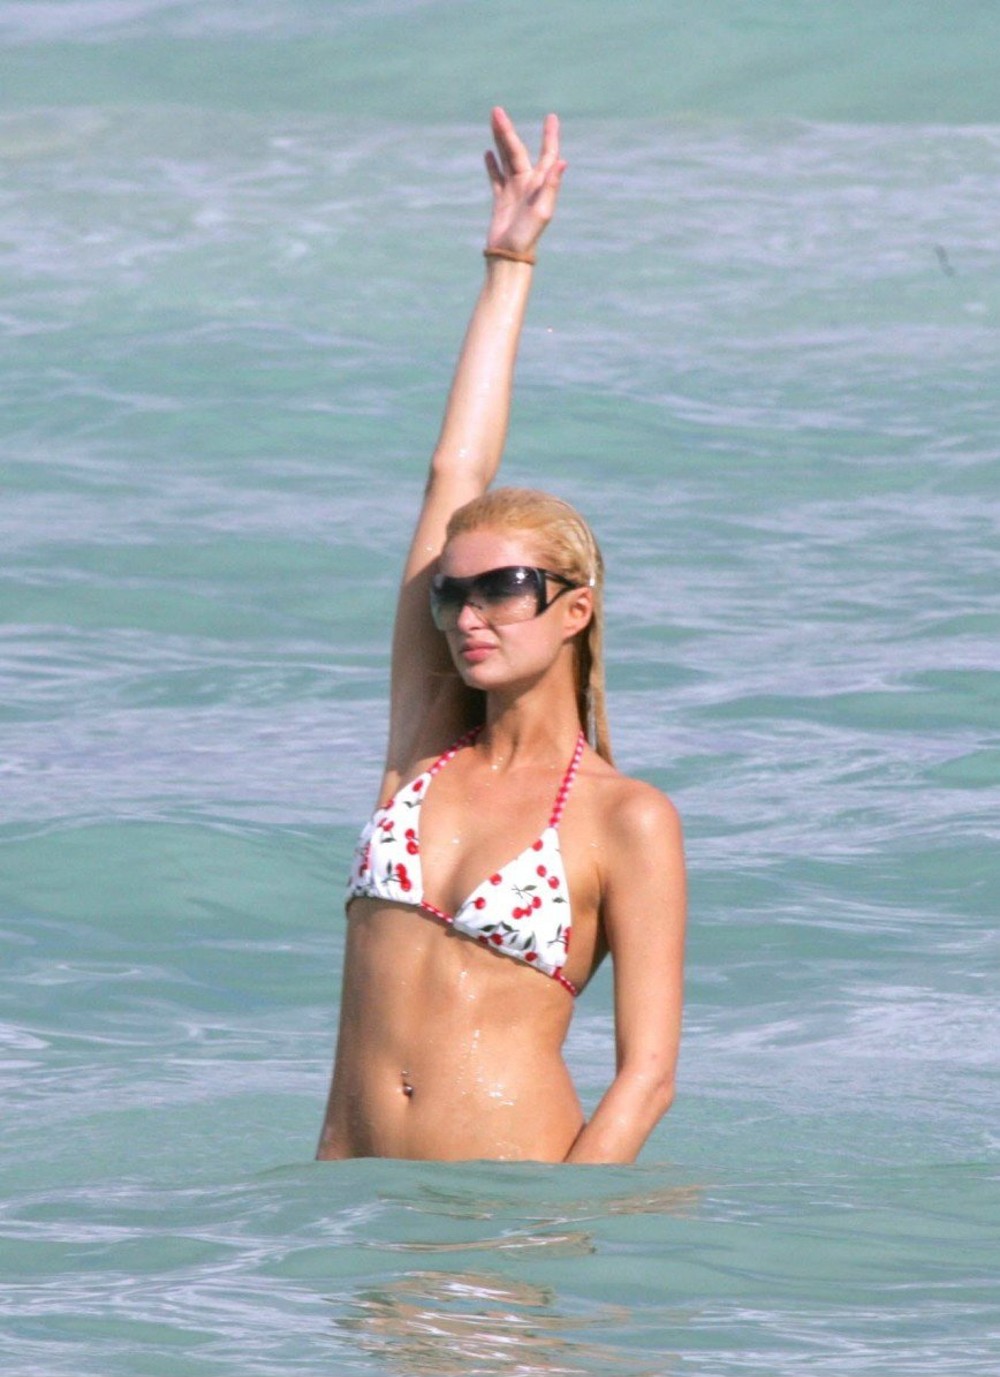 General photo of Paris Hilton